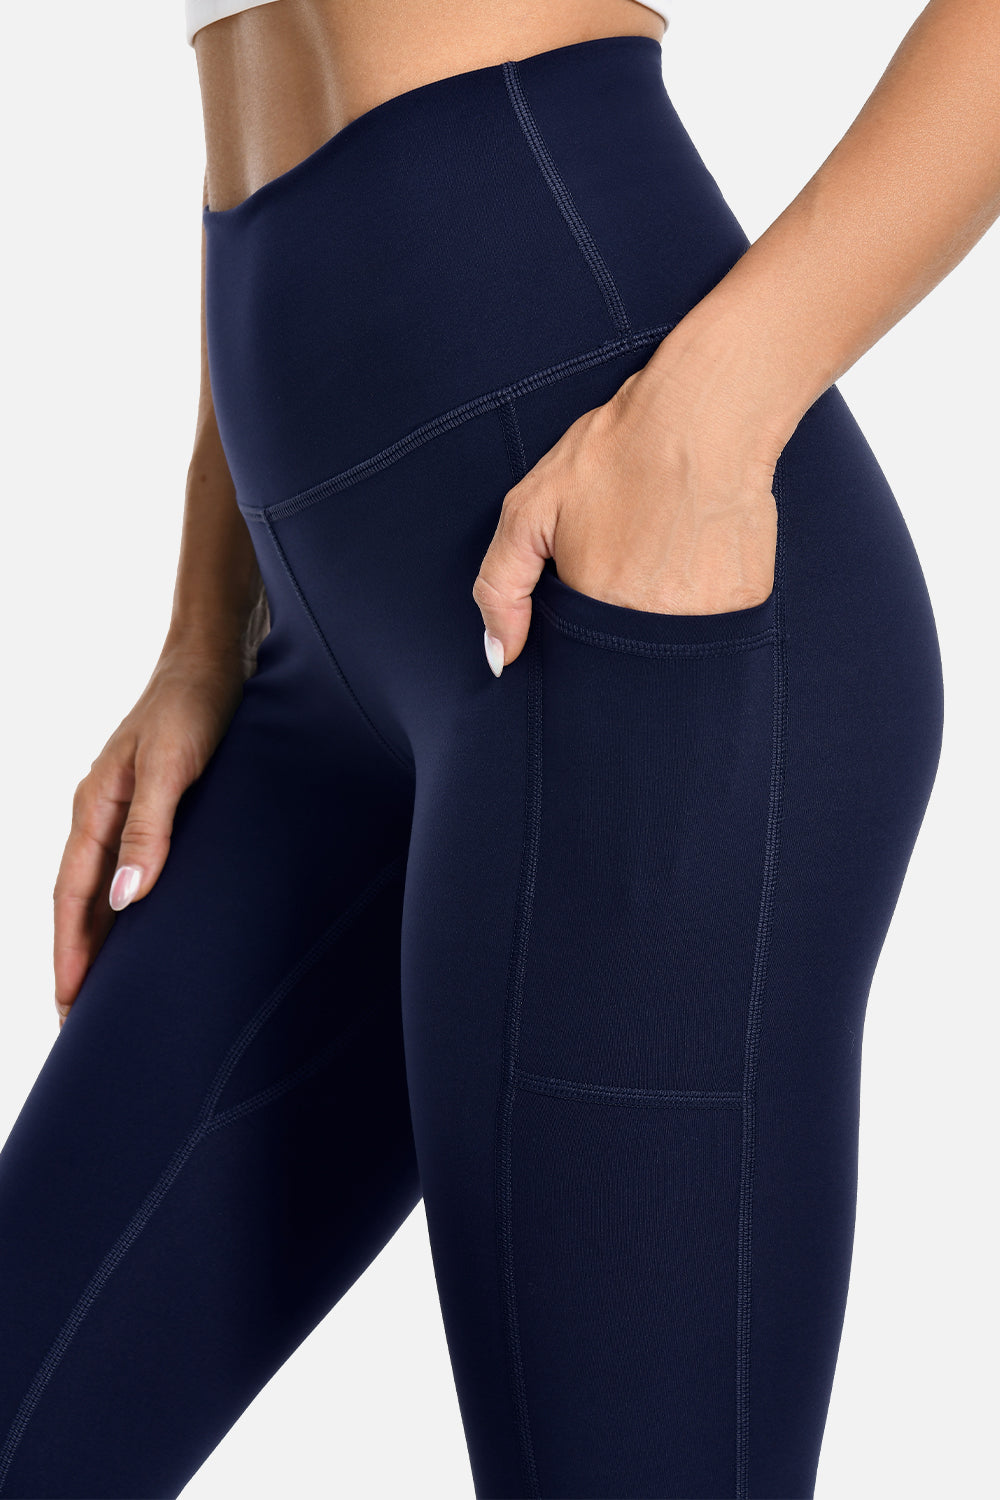 Colorfulkoala Women's Buttery Soft High Waisted Yoga Pants Full-Length  Leggings